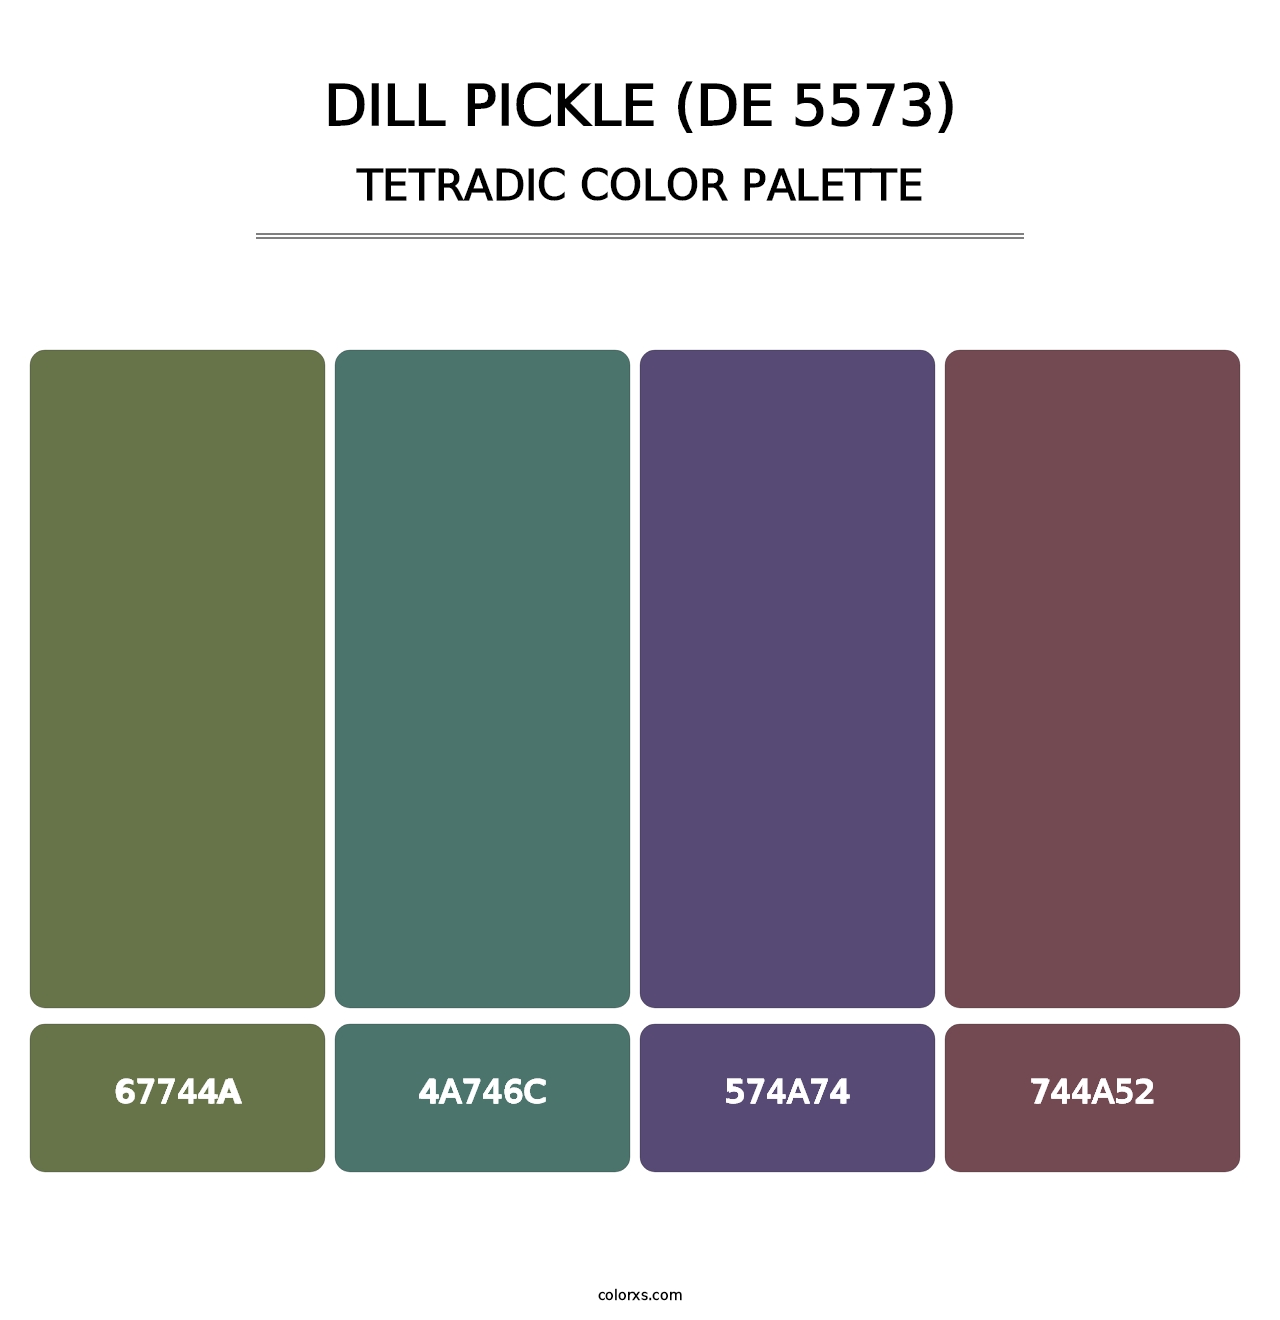 Dill Pickle (DE 5573) - Tetradic Color Palette